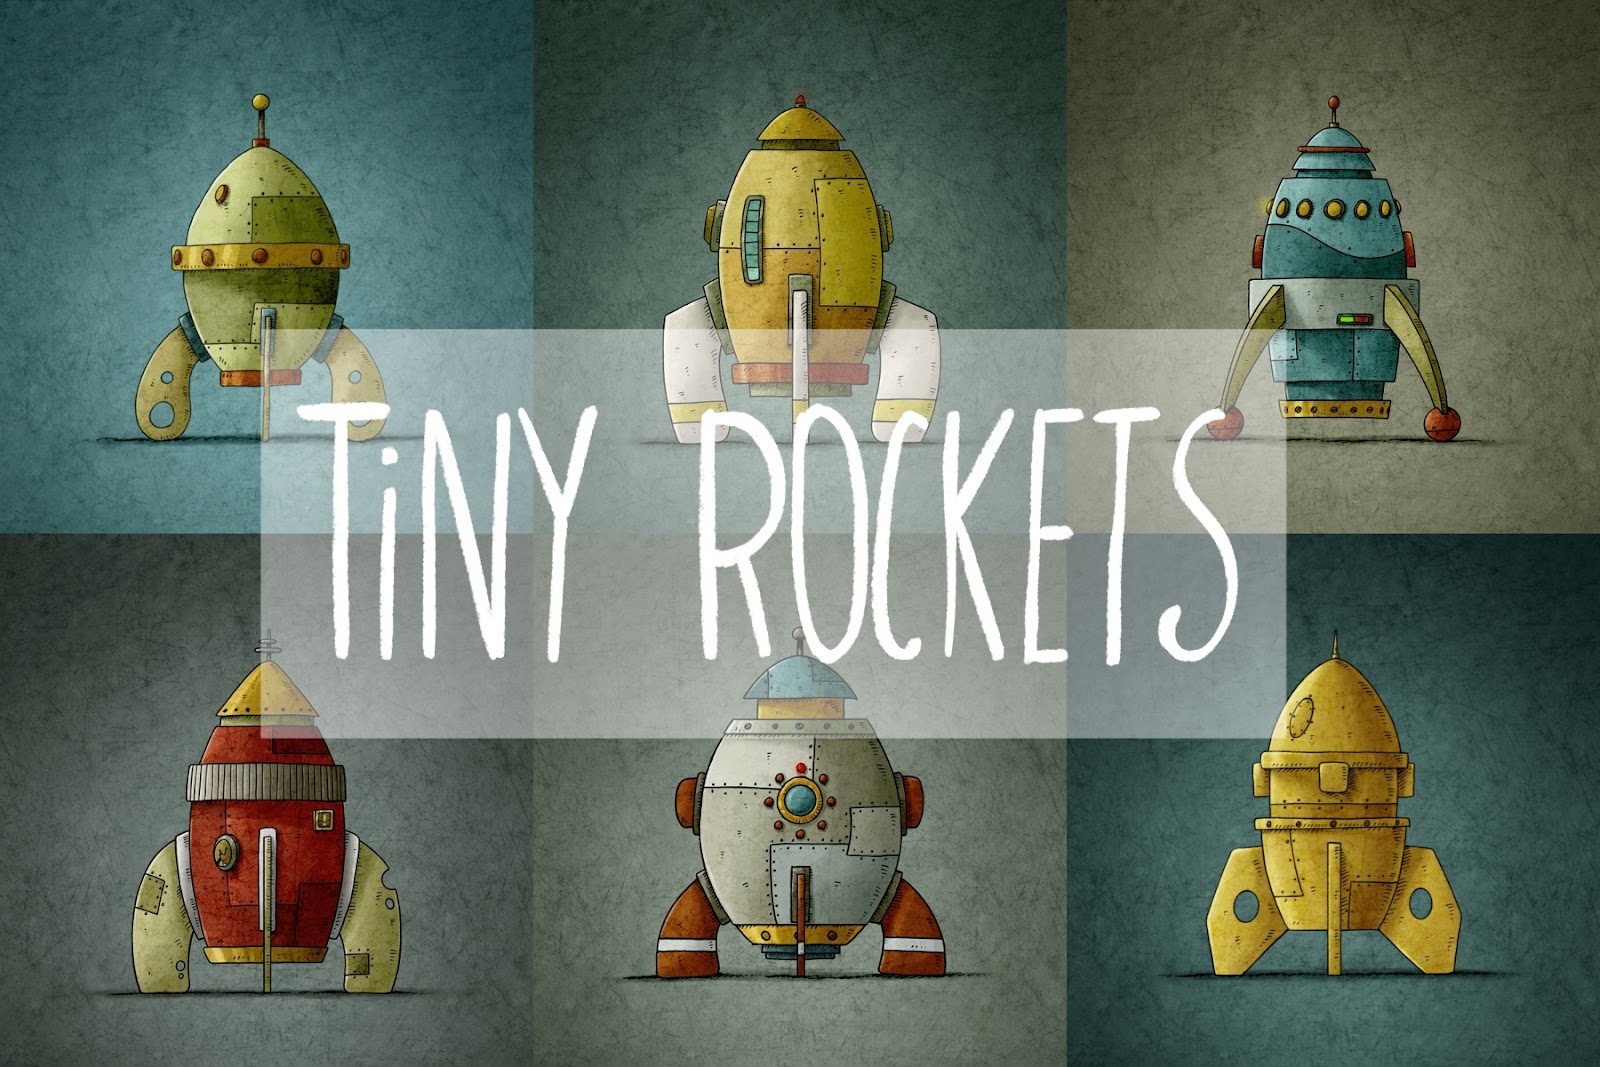 Tiny rockets image